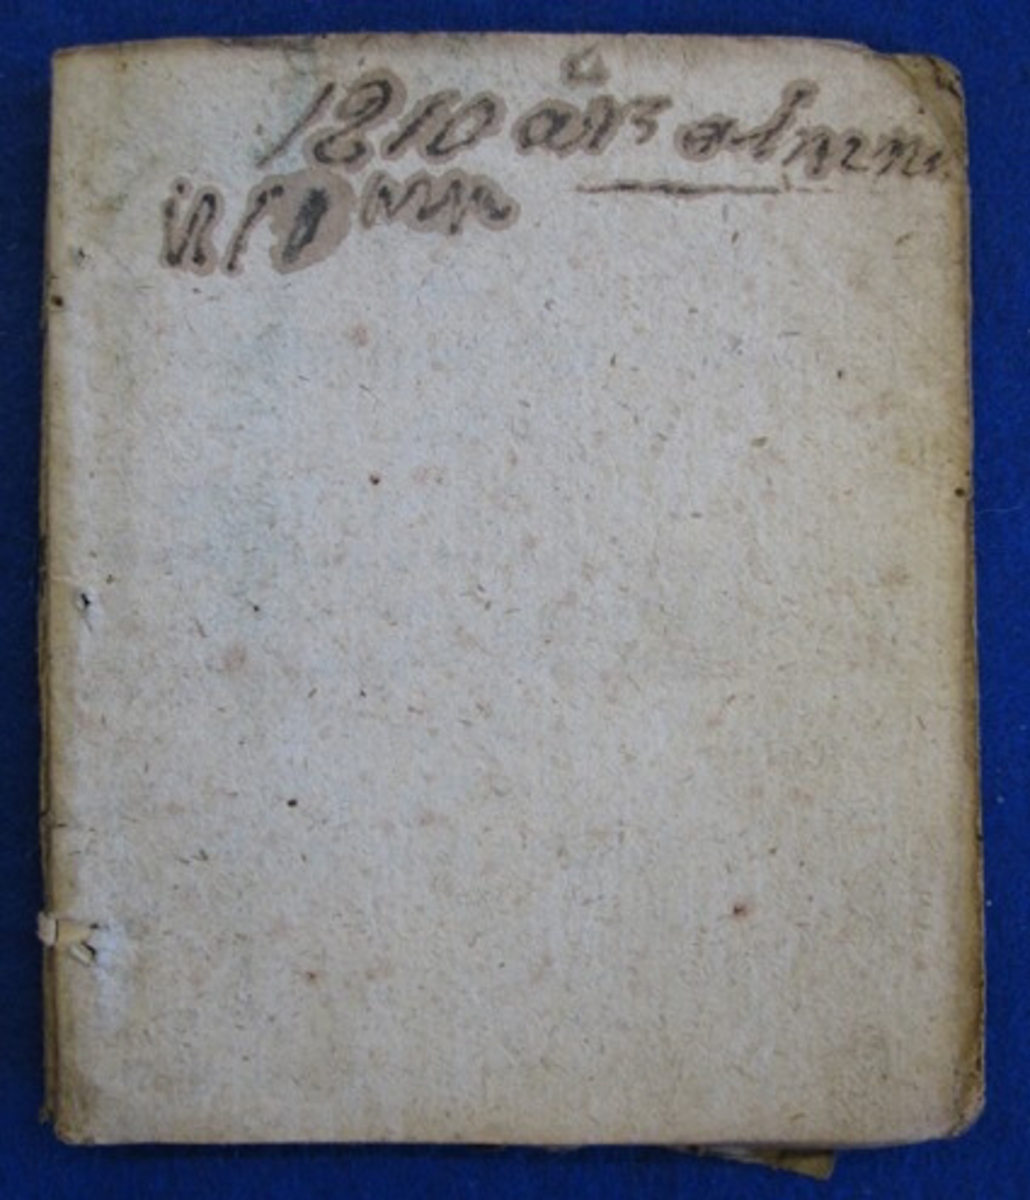 Almanacka från 1810 till Göteborgs horisont.

Almanackan kan tillhöra samlingen VM 5366.